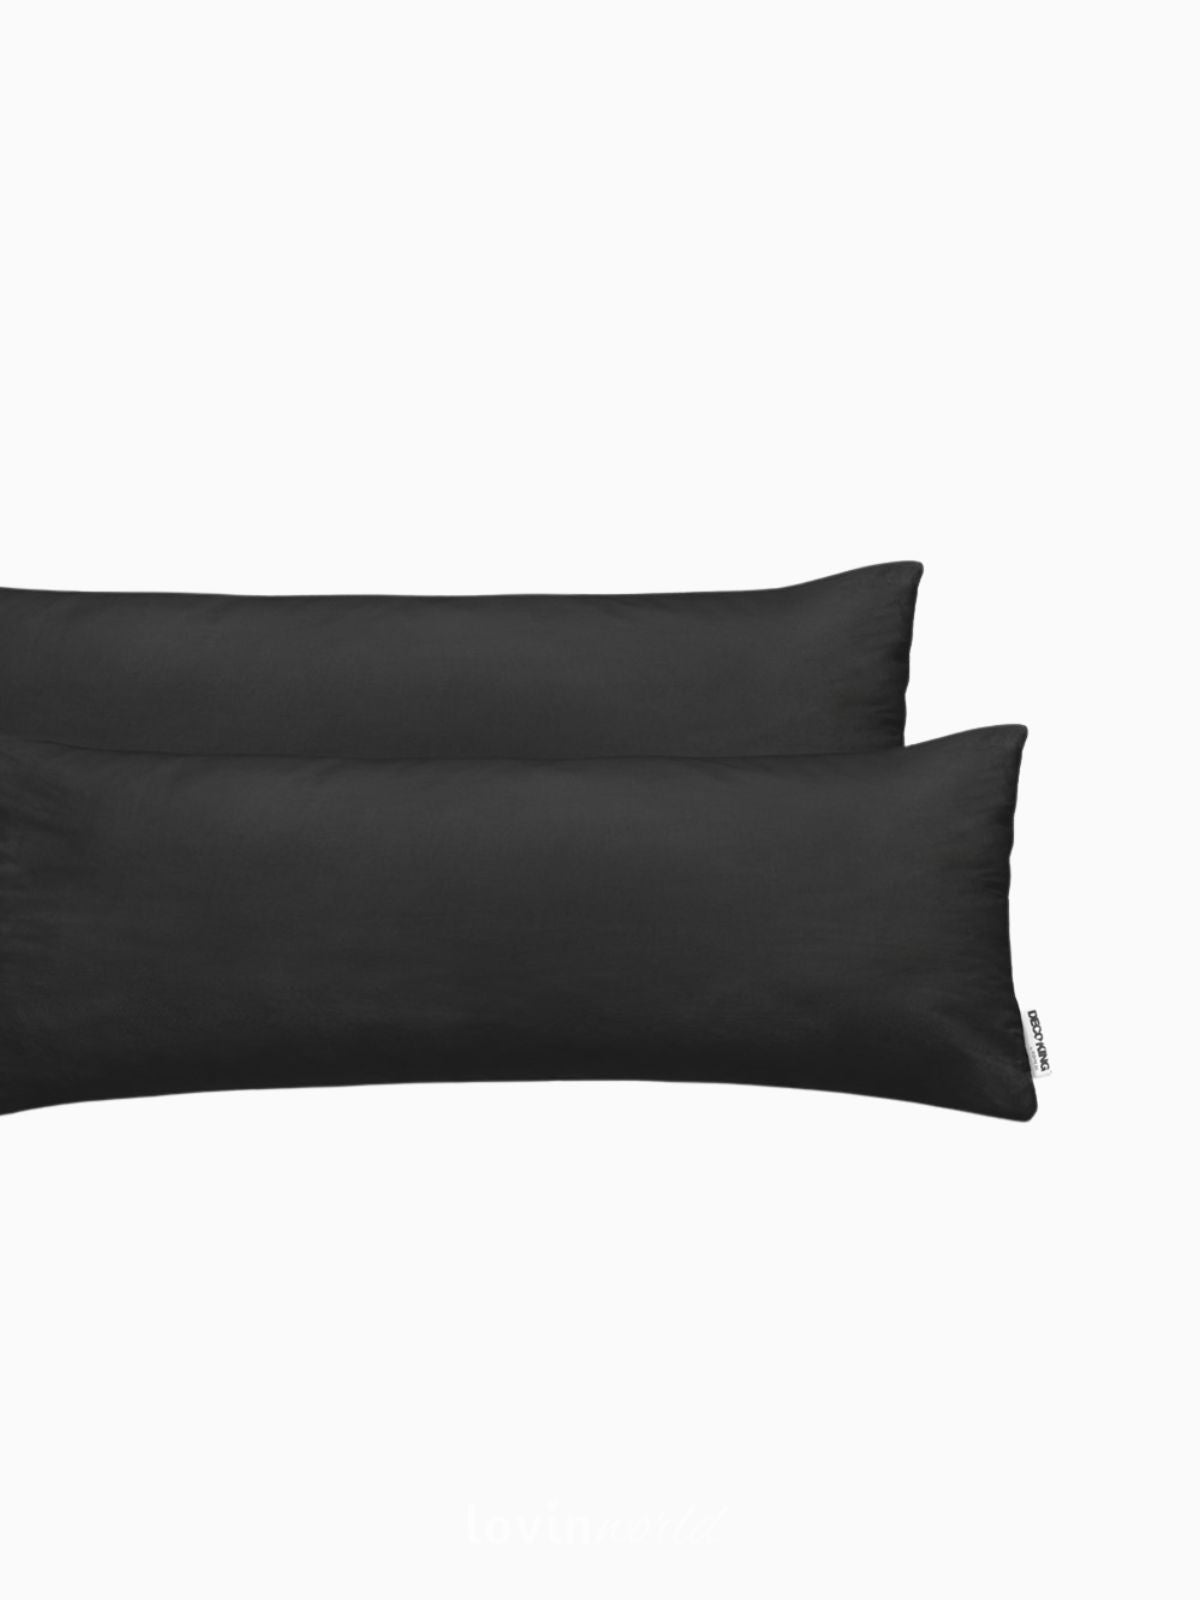 2 Federe per cuscino Amber in colore nero 40x200 cm.-3